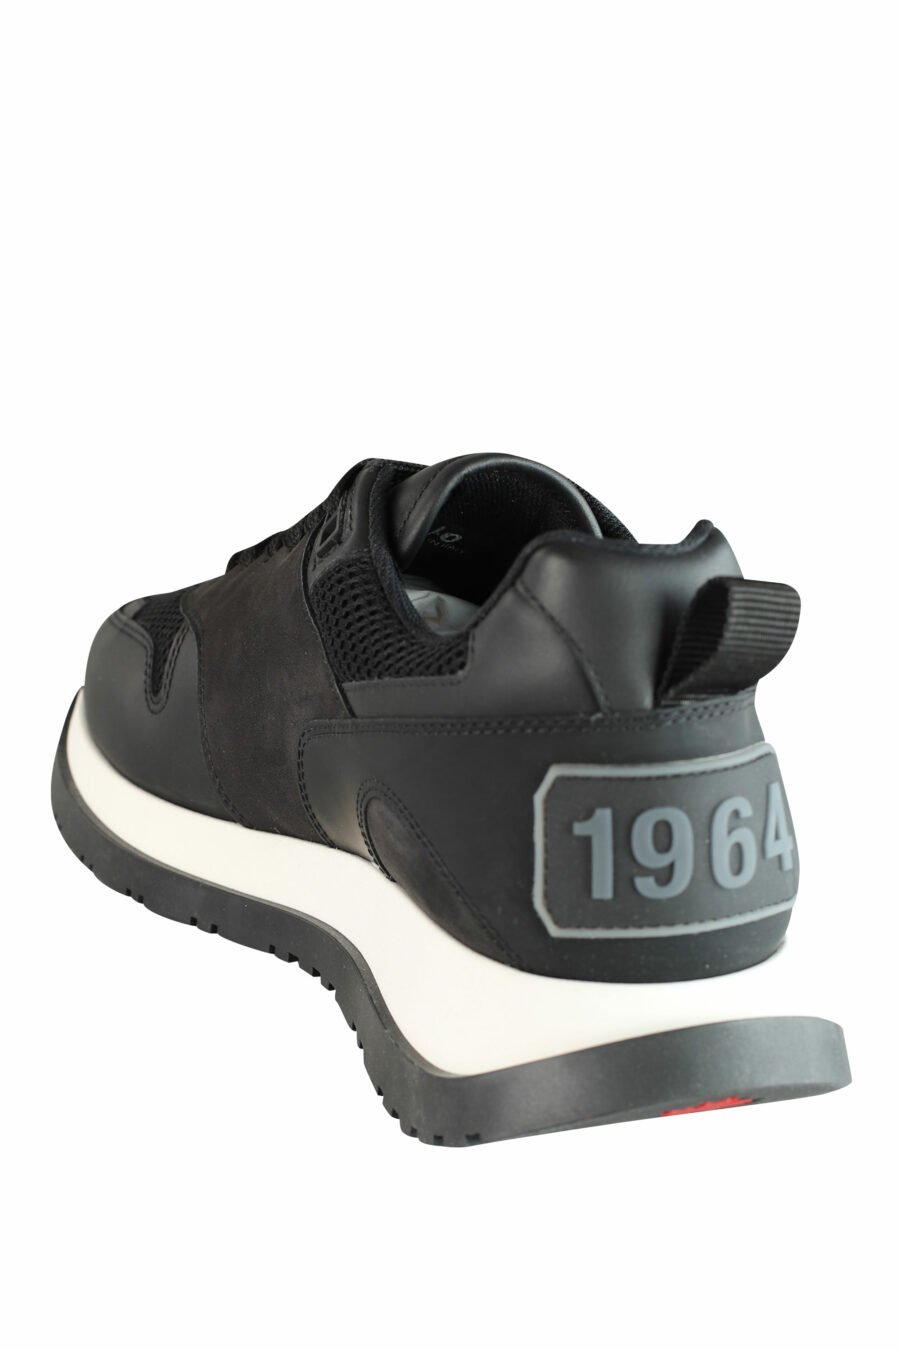 Schwarze Laufschuhe mit weißer Sohle und schwarzem Logo - IMG 1434